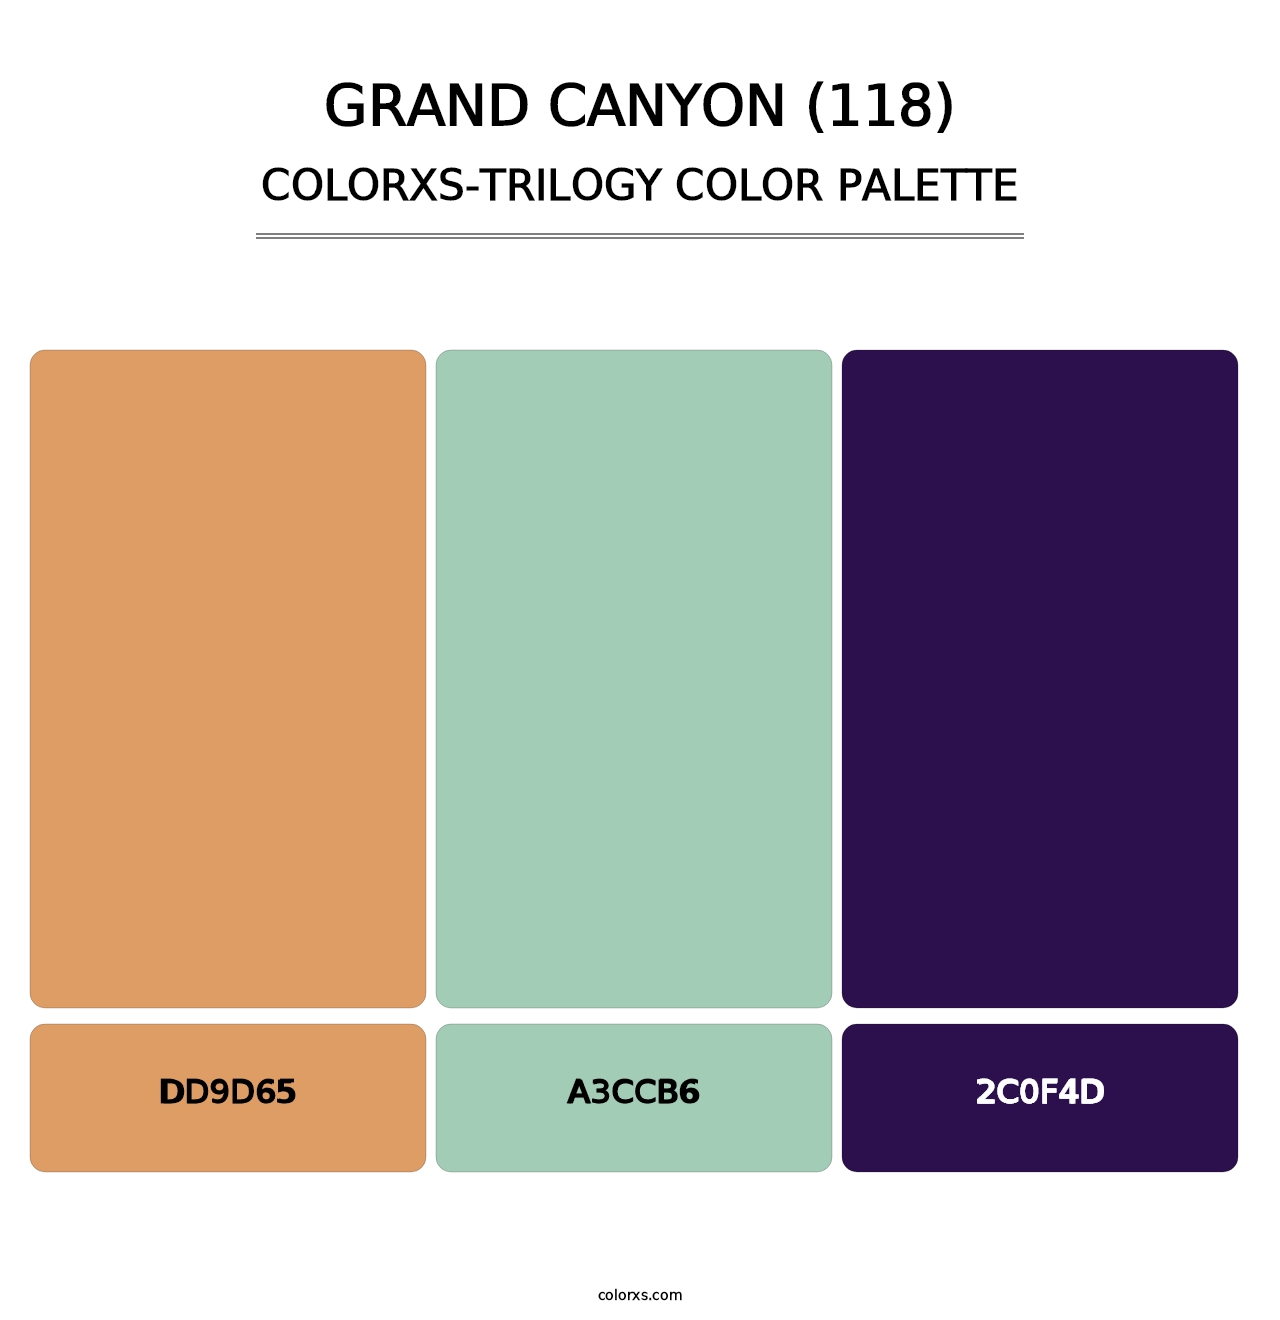 Grand Canyon (118) - Colorxs Trilogy Palette